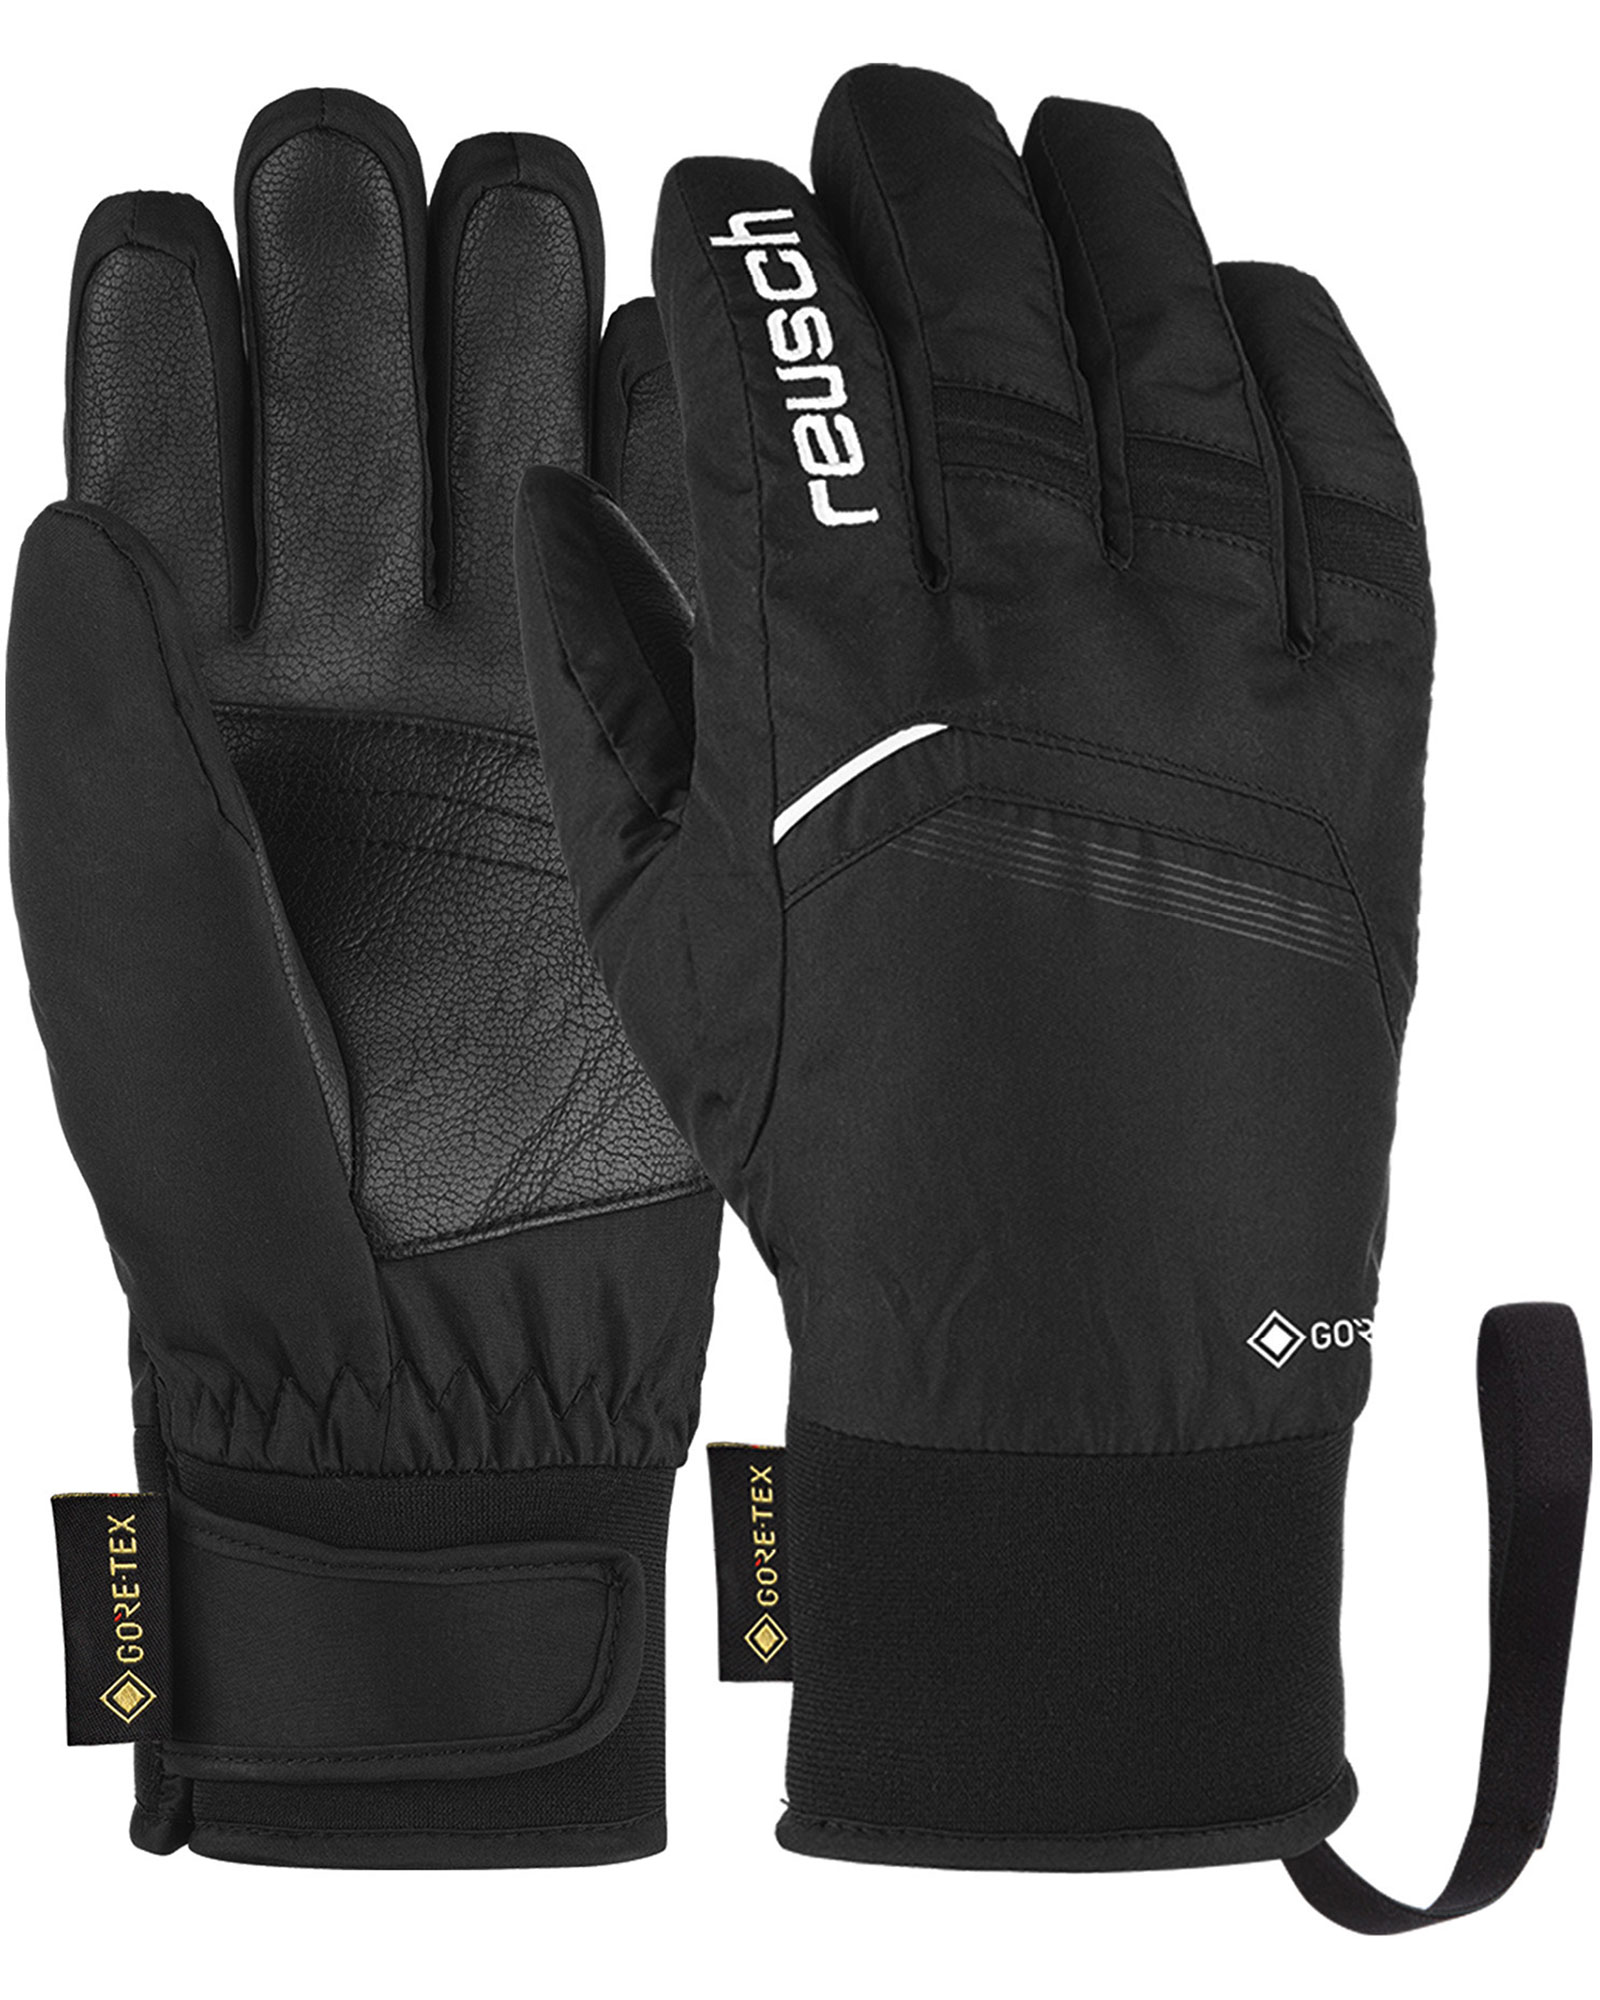 Reusch Bolt GORE TEX Kids’ Gloves - Black/white Size 5